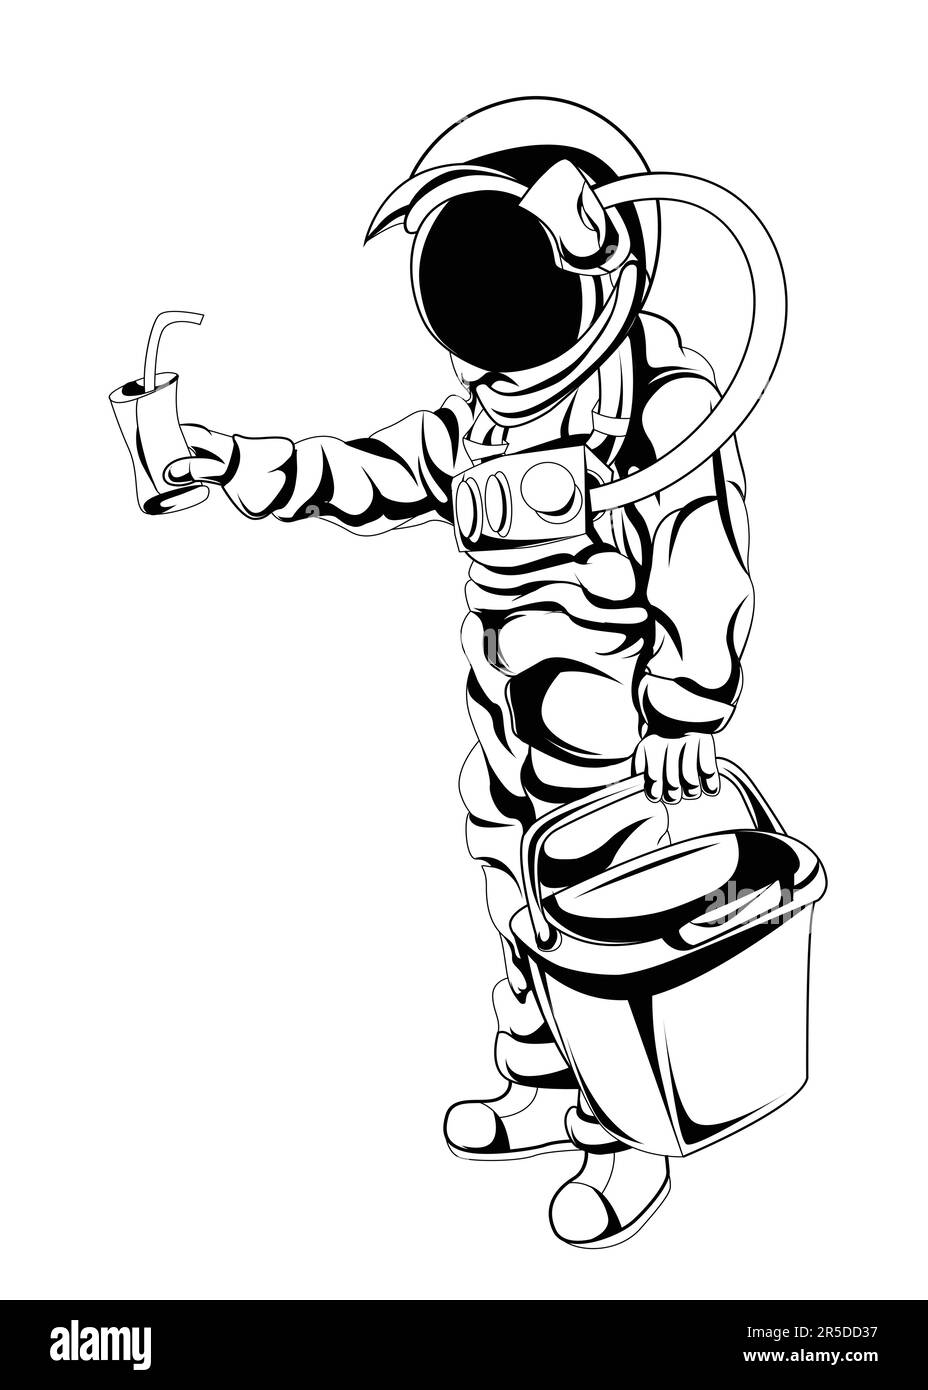 Carattere astronauta spazio adatto come regalo di compleanno per i vostri amici, celebrazione, evento o comunità spaziale e astronauta. Tour spaziale Illustrazione Vettoriale